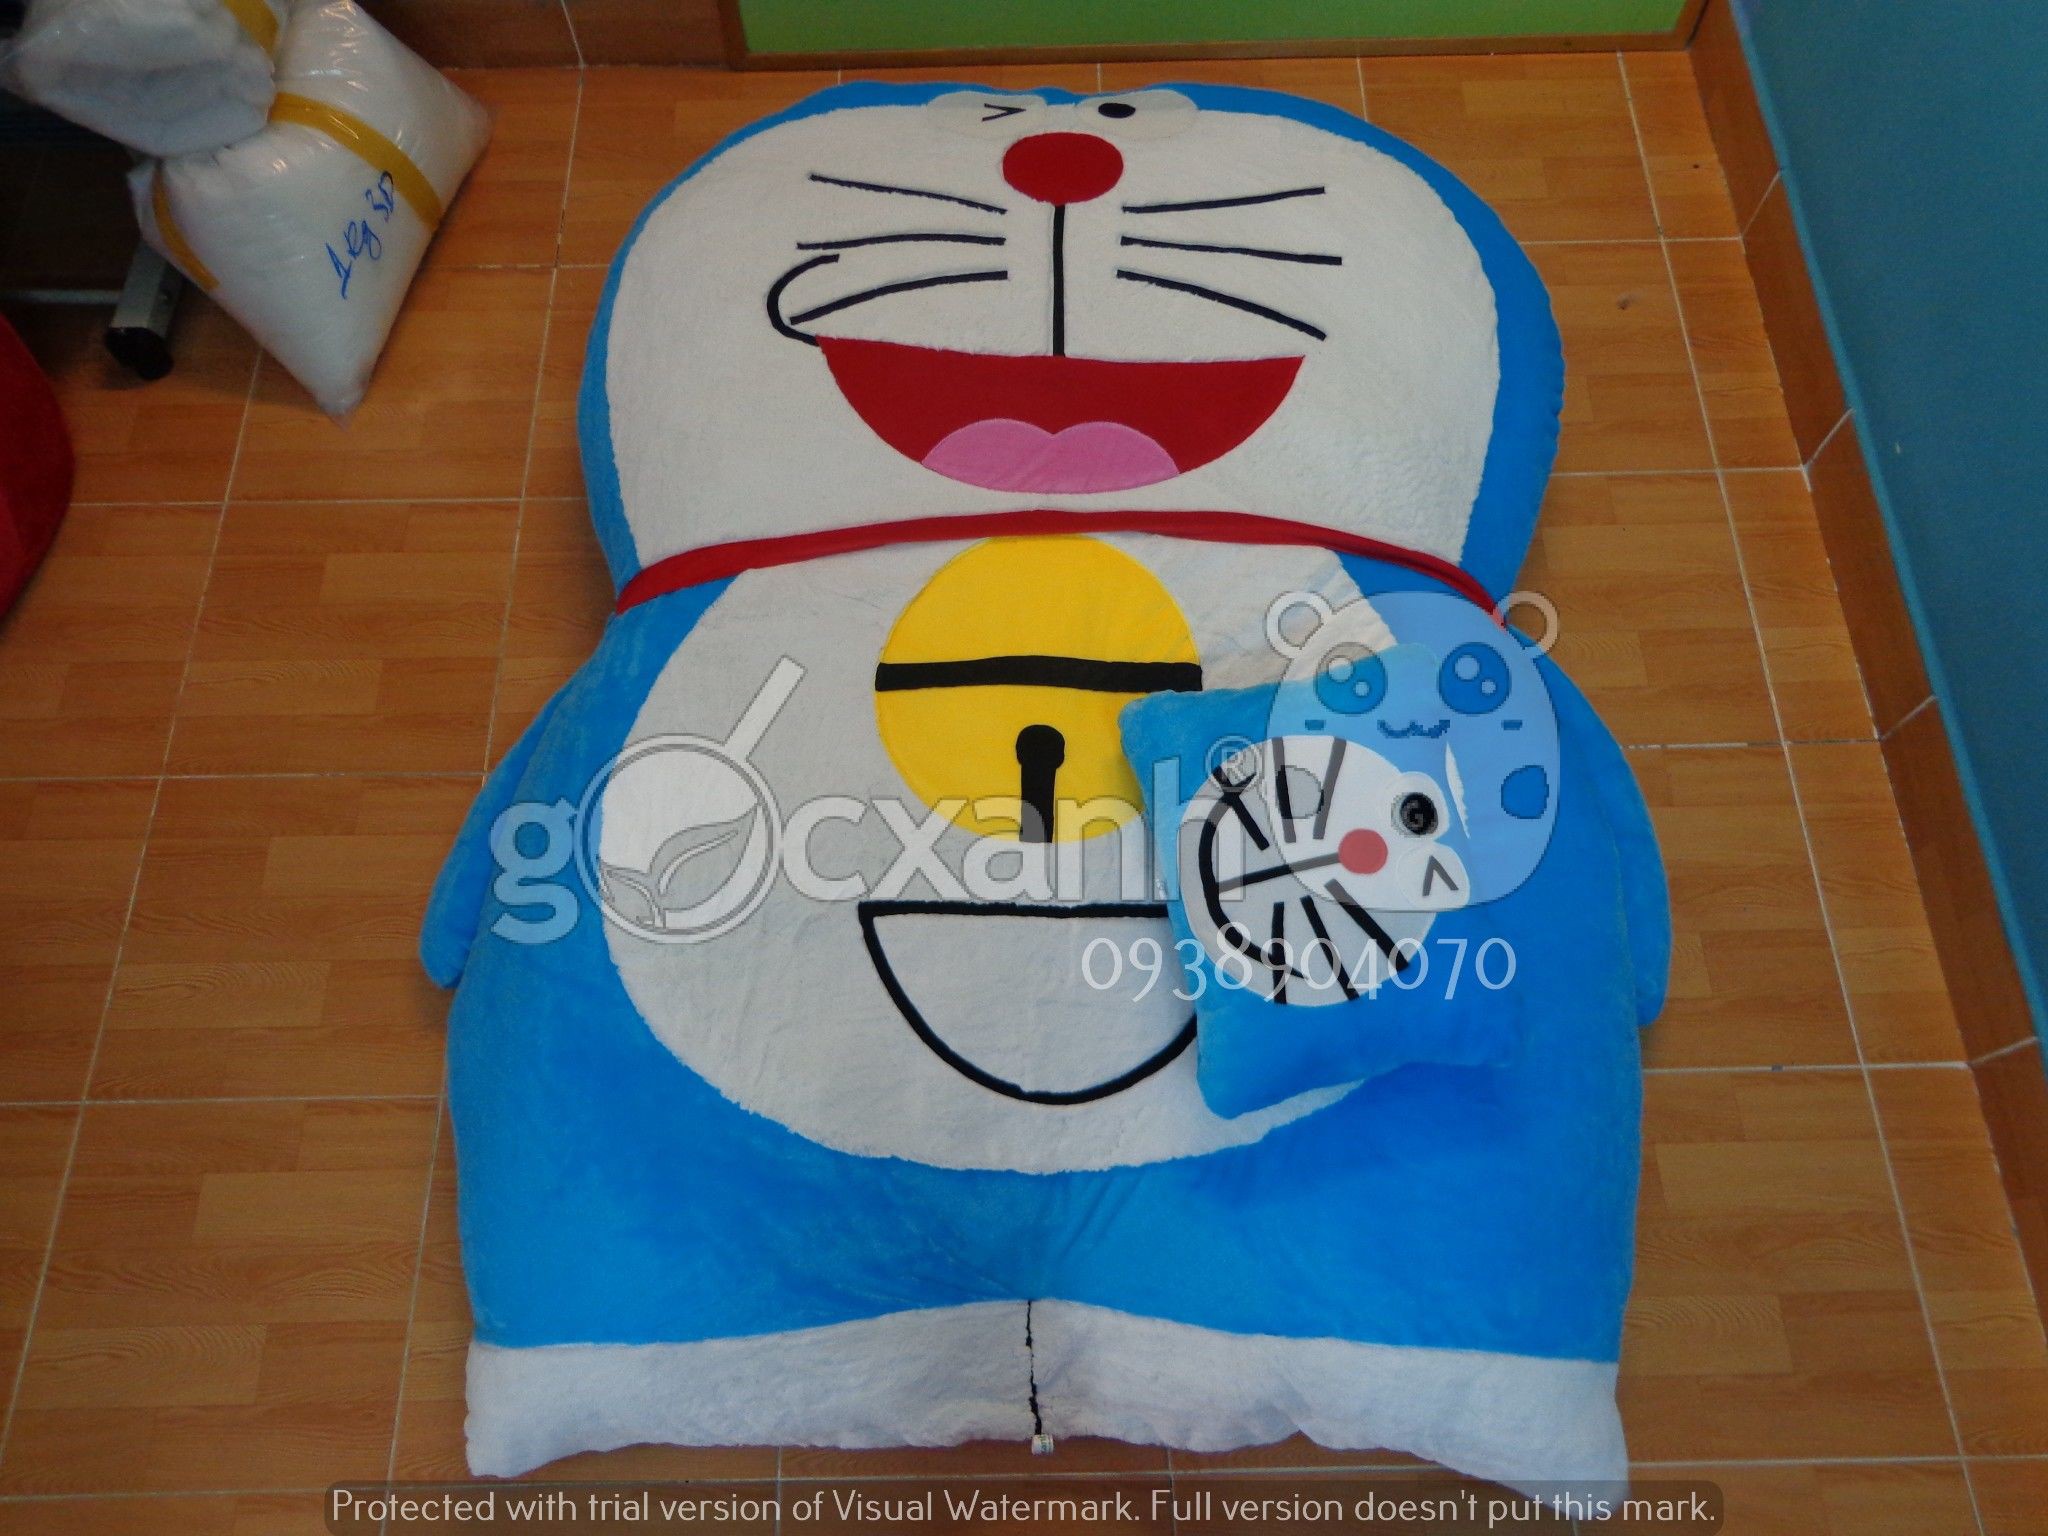 Nệm Doraemon há miệng (1.4 x 1.9m)